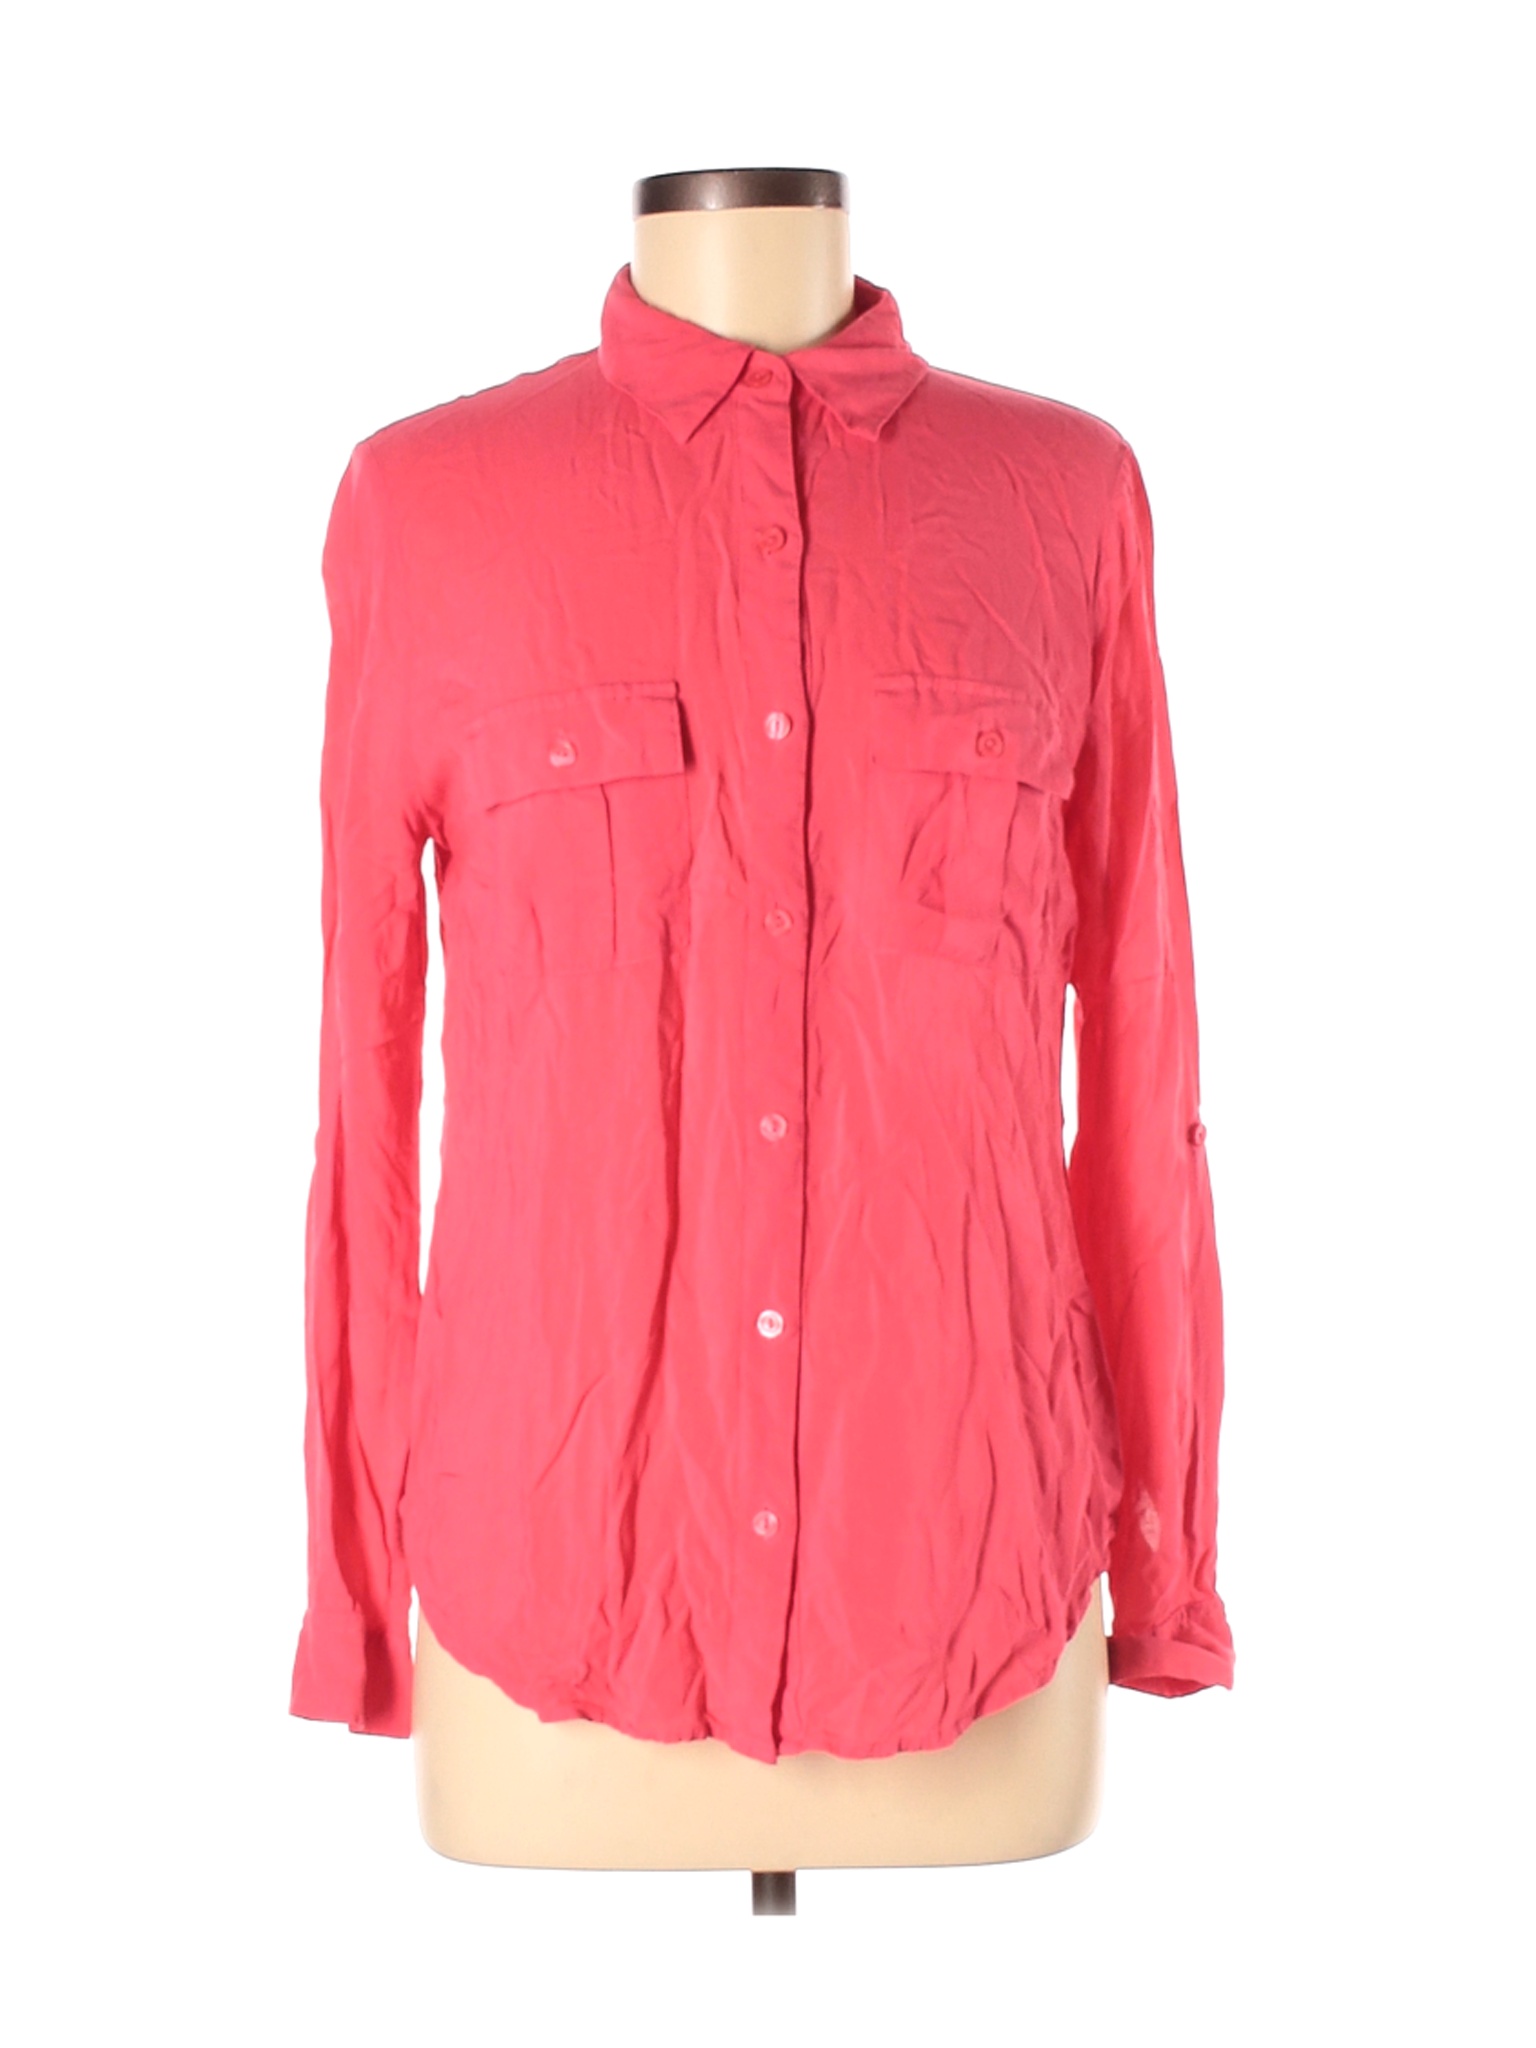 A.n.a. A New Approach Women Pink Long Sleeve Button-Down Shirt M | eBay